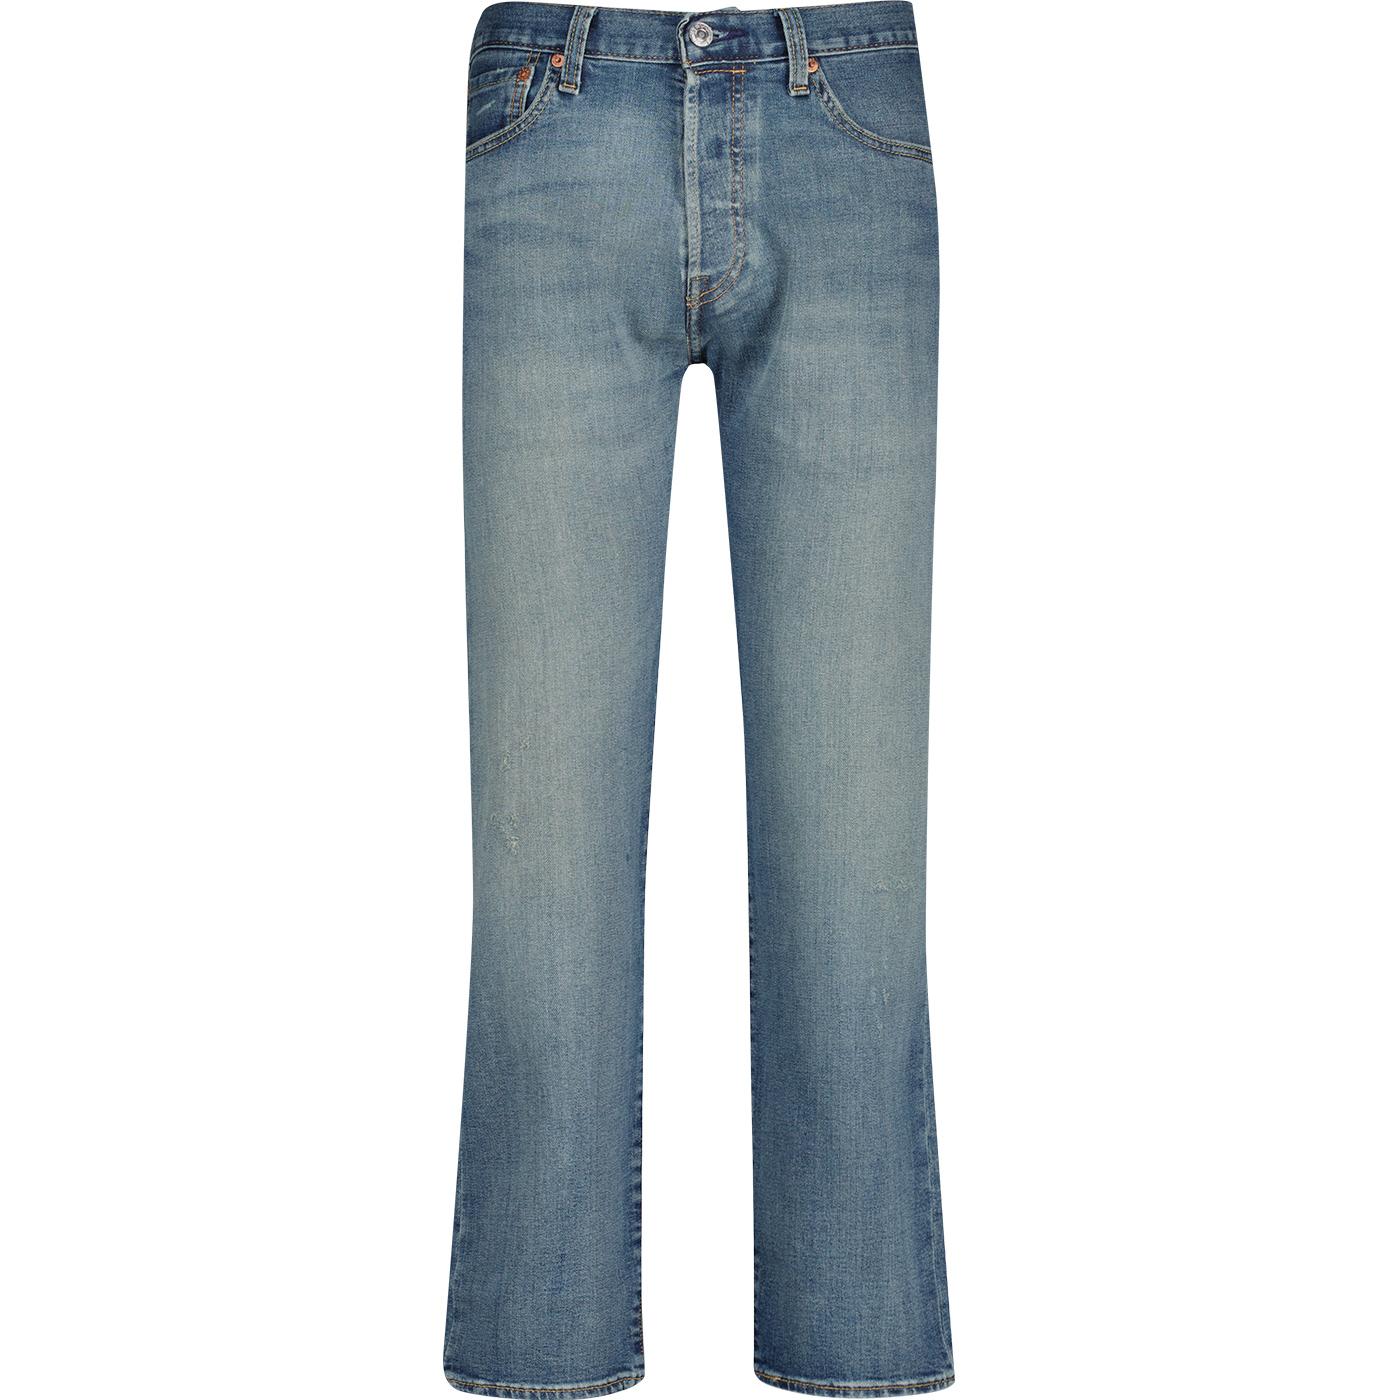 LEVI'S® 501® Original Straight Jeans Medium Indigo